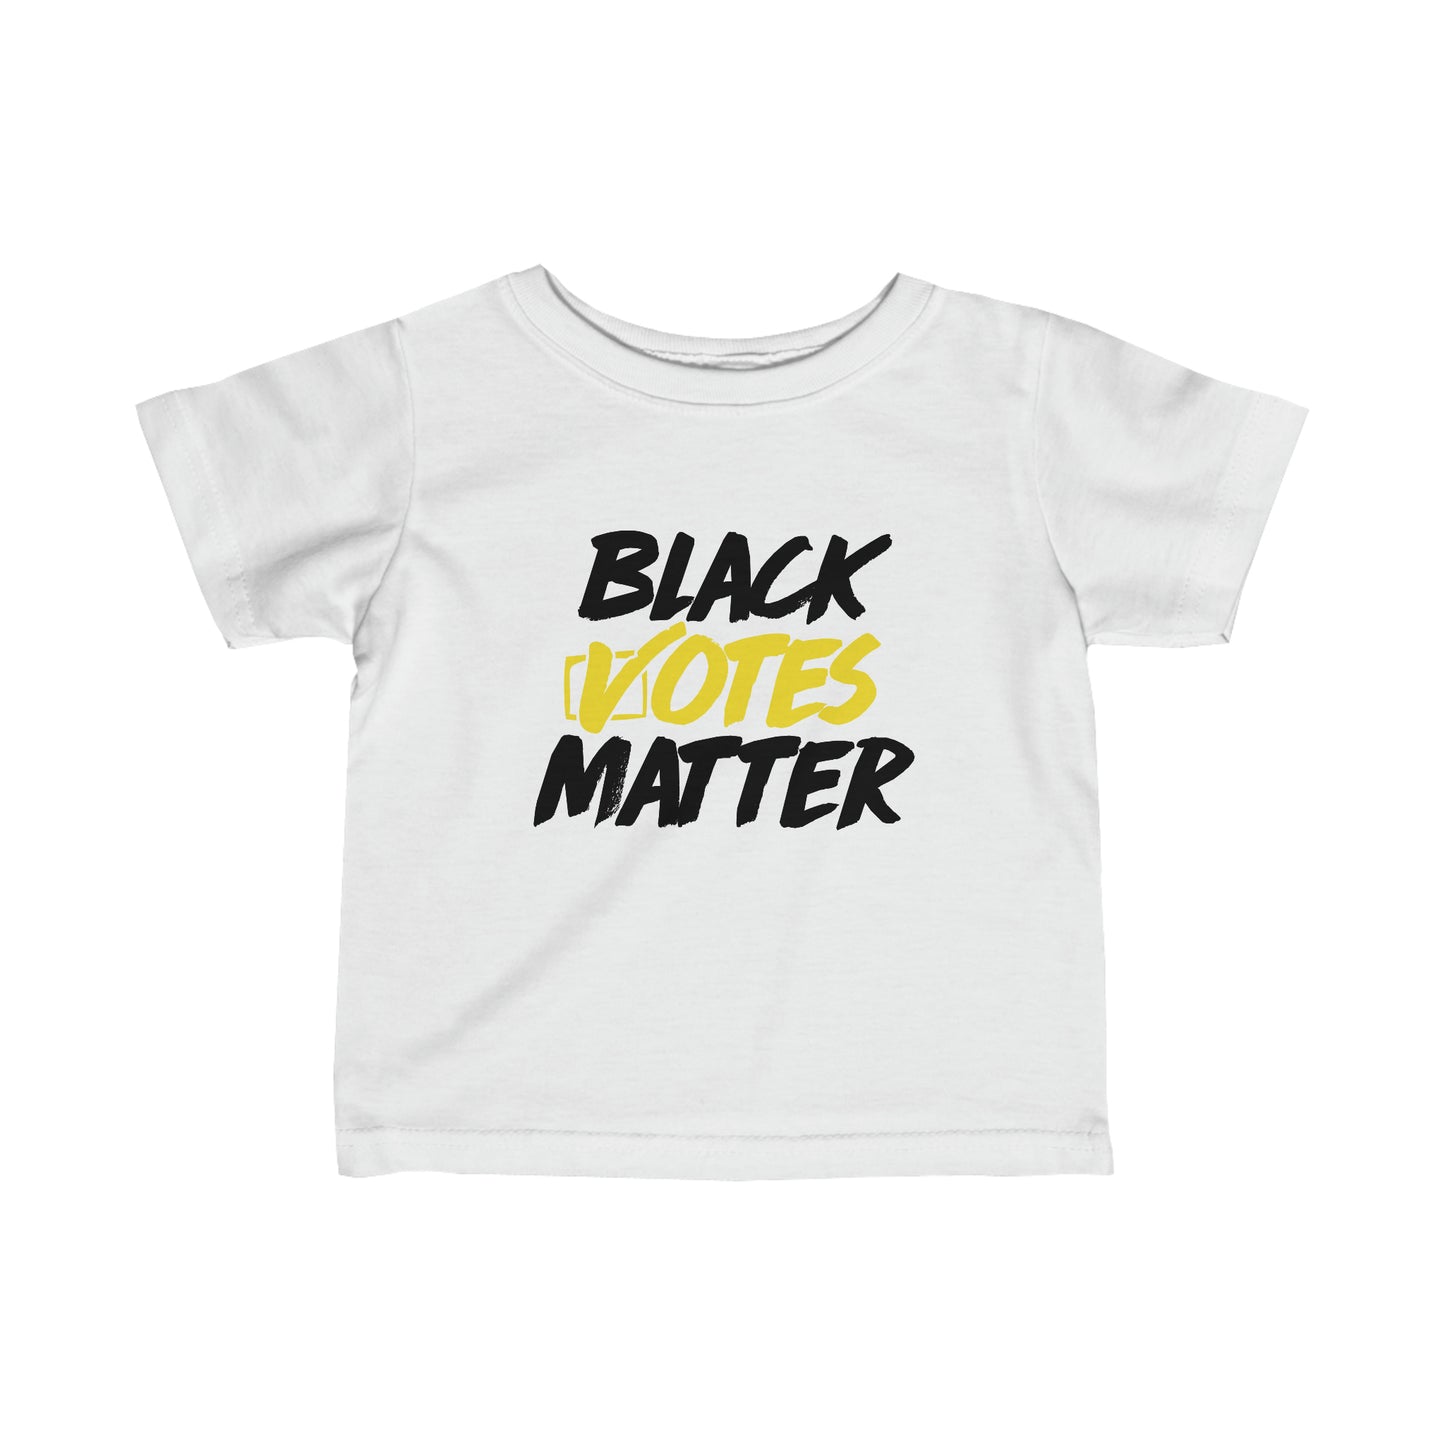 “Black Votes Matter (white text)” Infant Tee